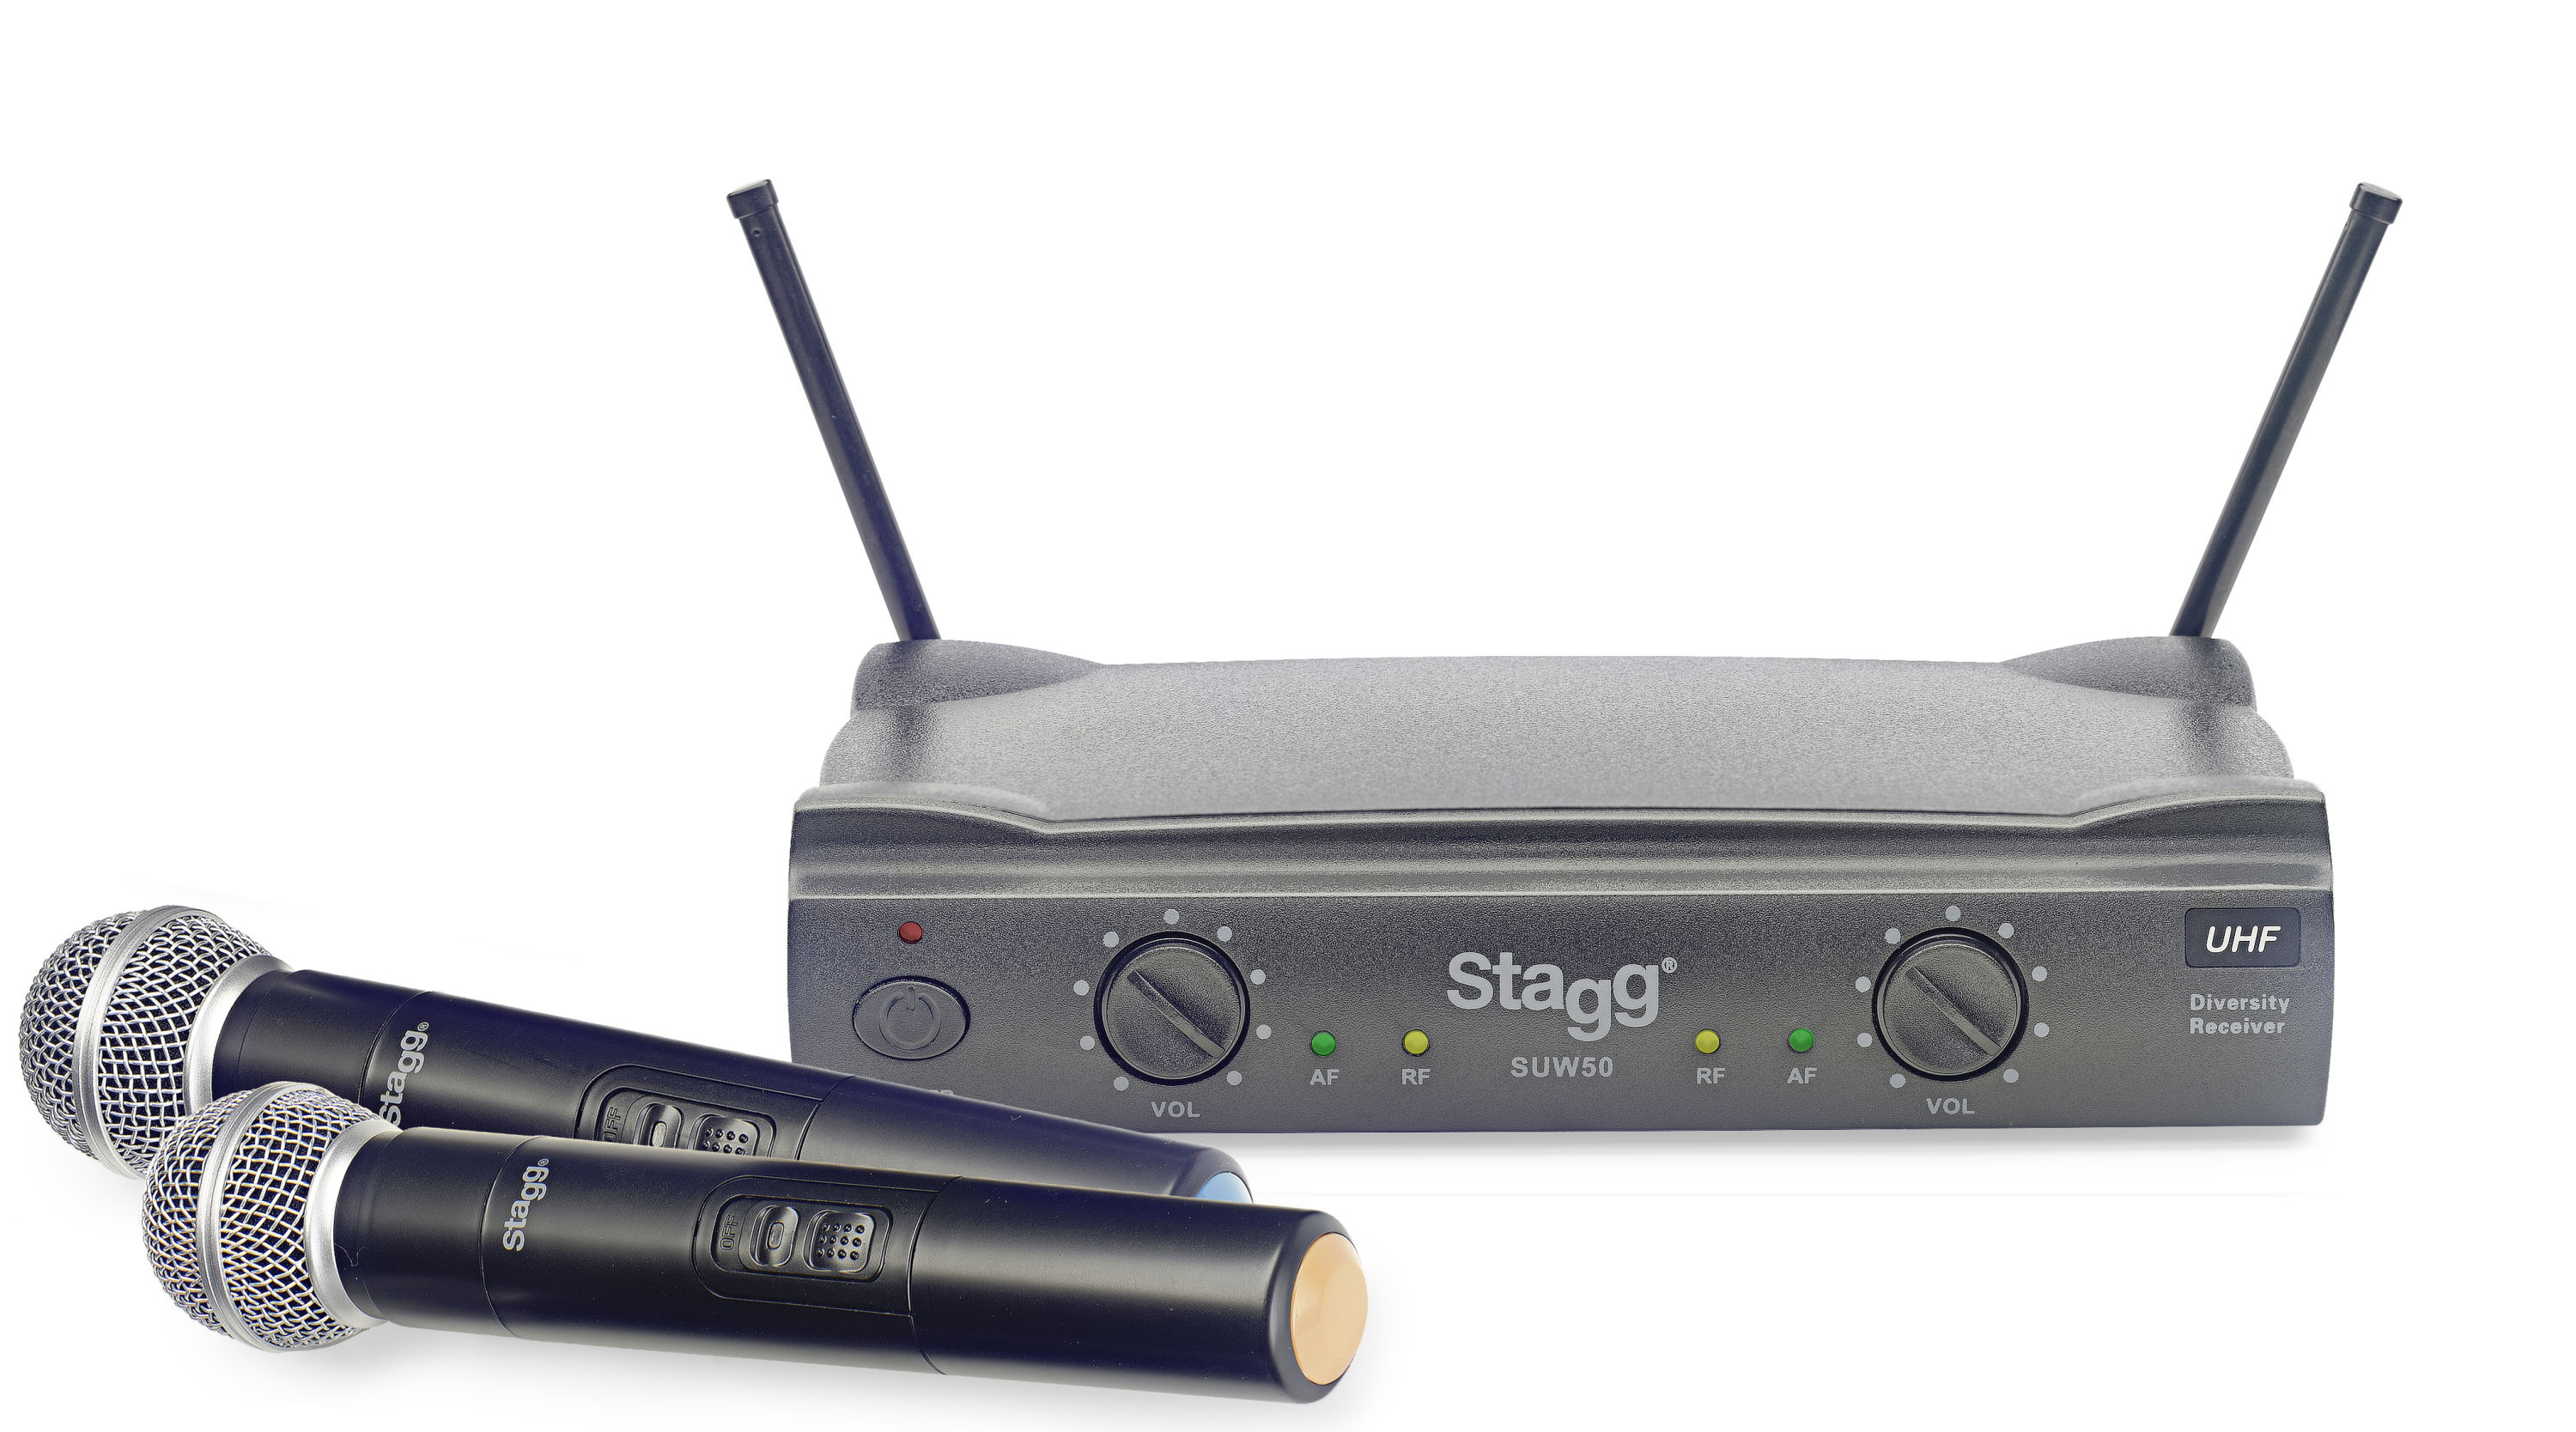 Stagg SUW 50 MM FH, UHF mikrofonní set 2 kanálový, 2x ruční mikrofon